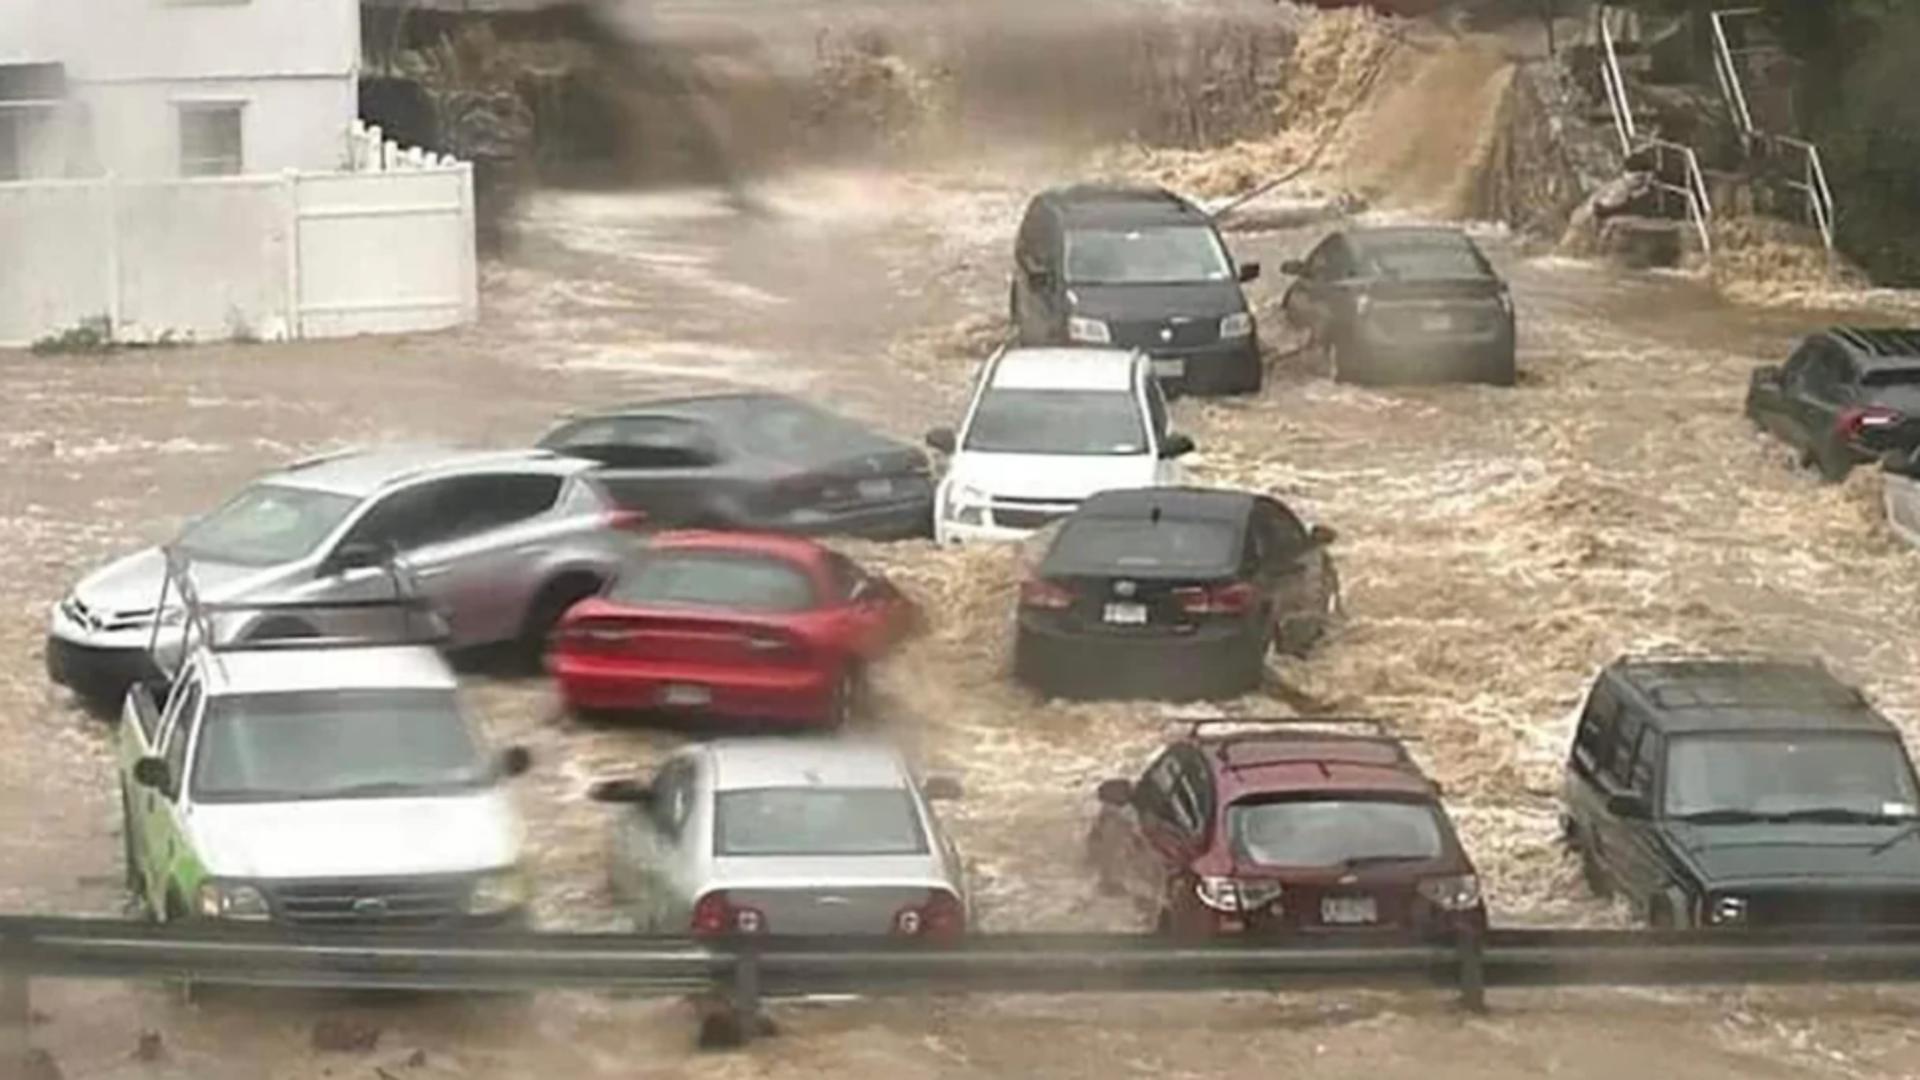 POTOP în America: Stare de urgență în New York după ploi masive - Poduri luate de ape, străzi inundate și primele victime